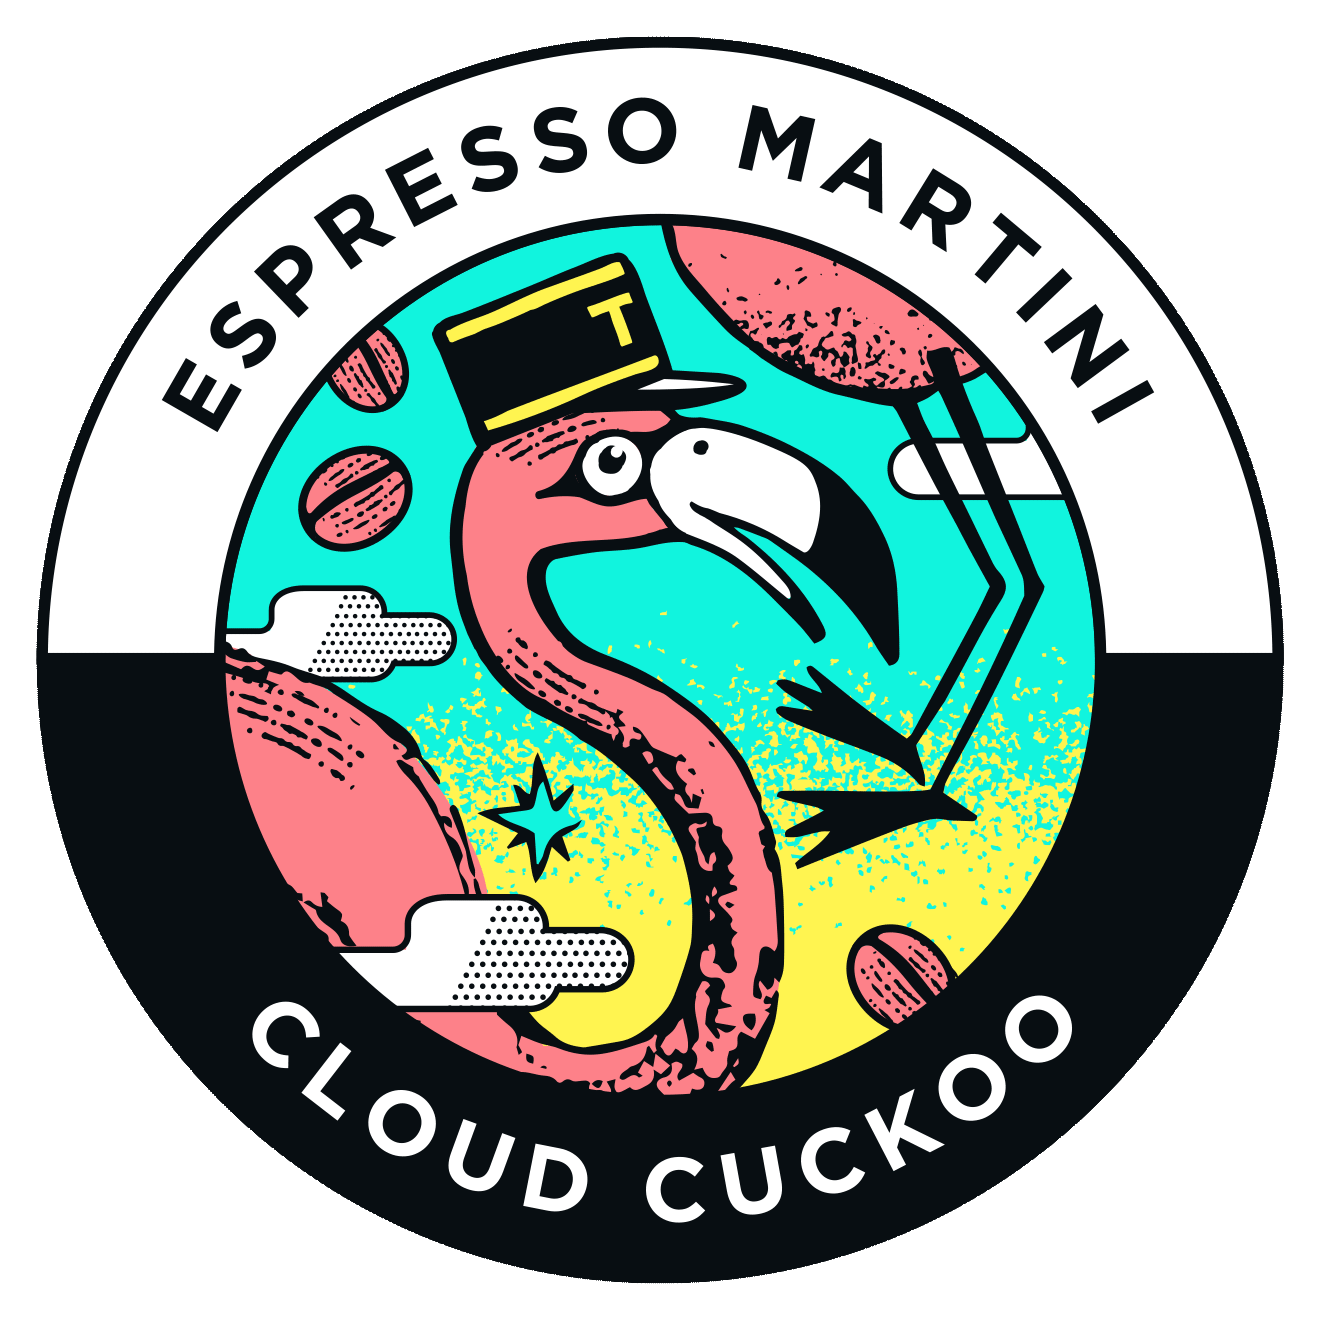 Cloud Cuckoo Espresso Martini 10% Keg 20L